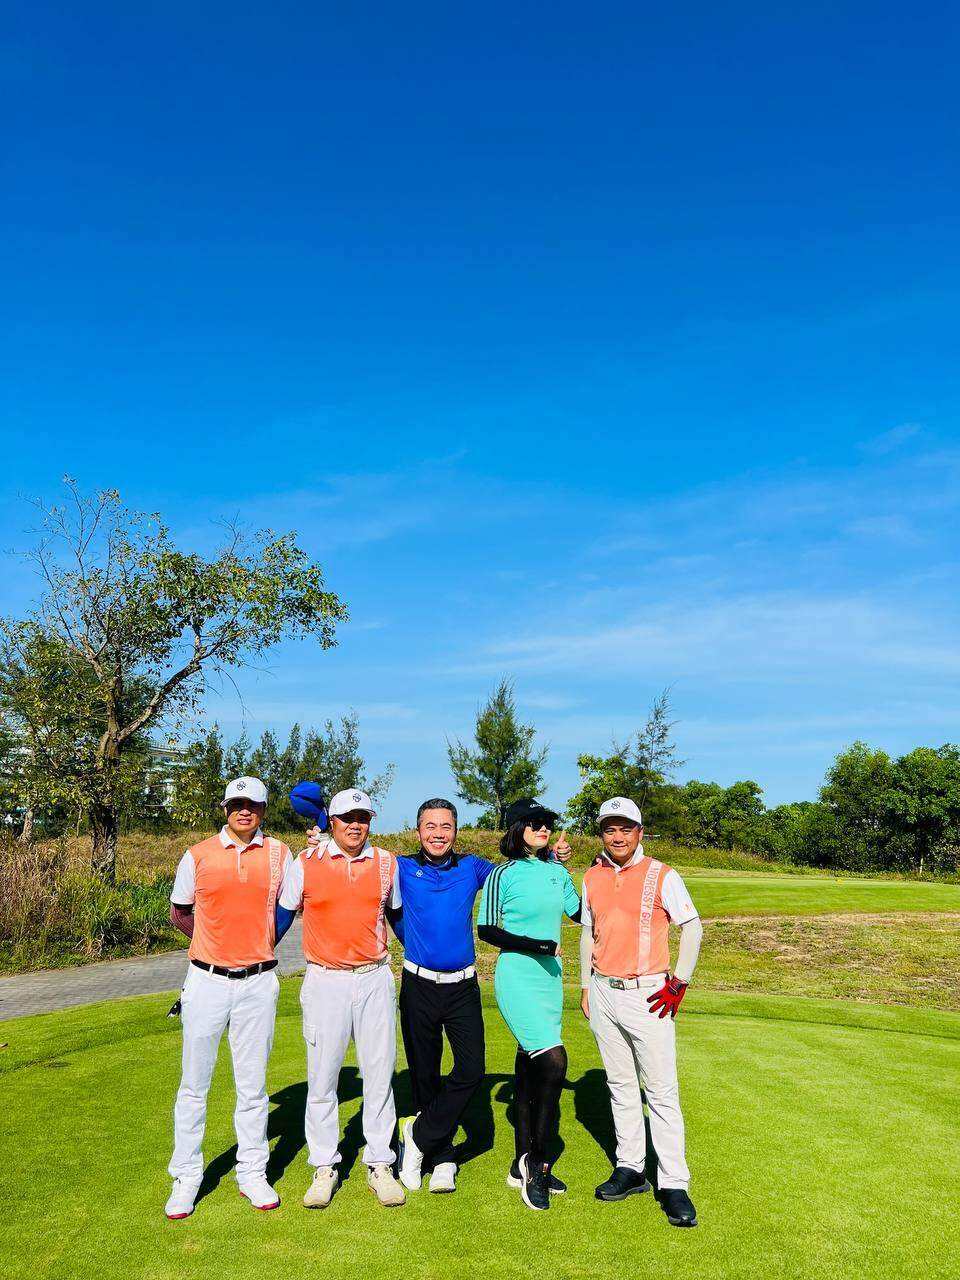 Golfer Dương Việt Vũ vô địch Sun Golf Championship 2023